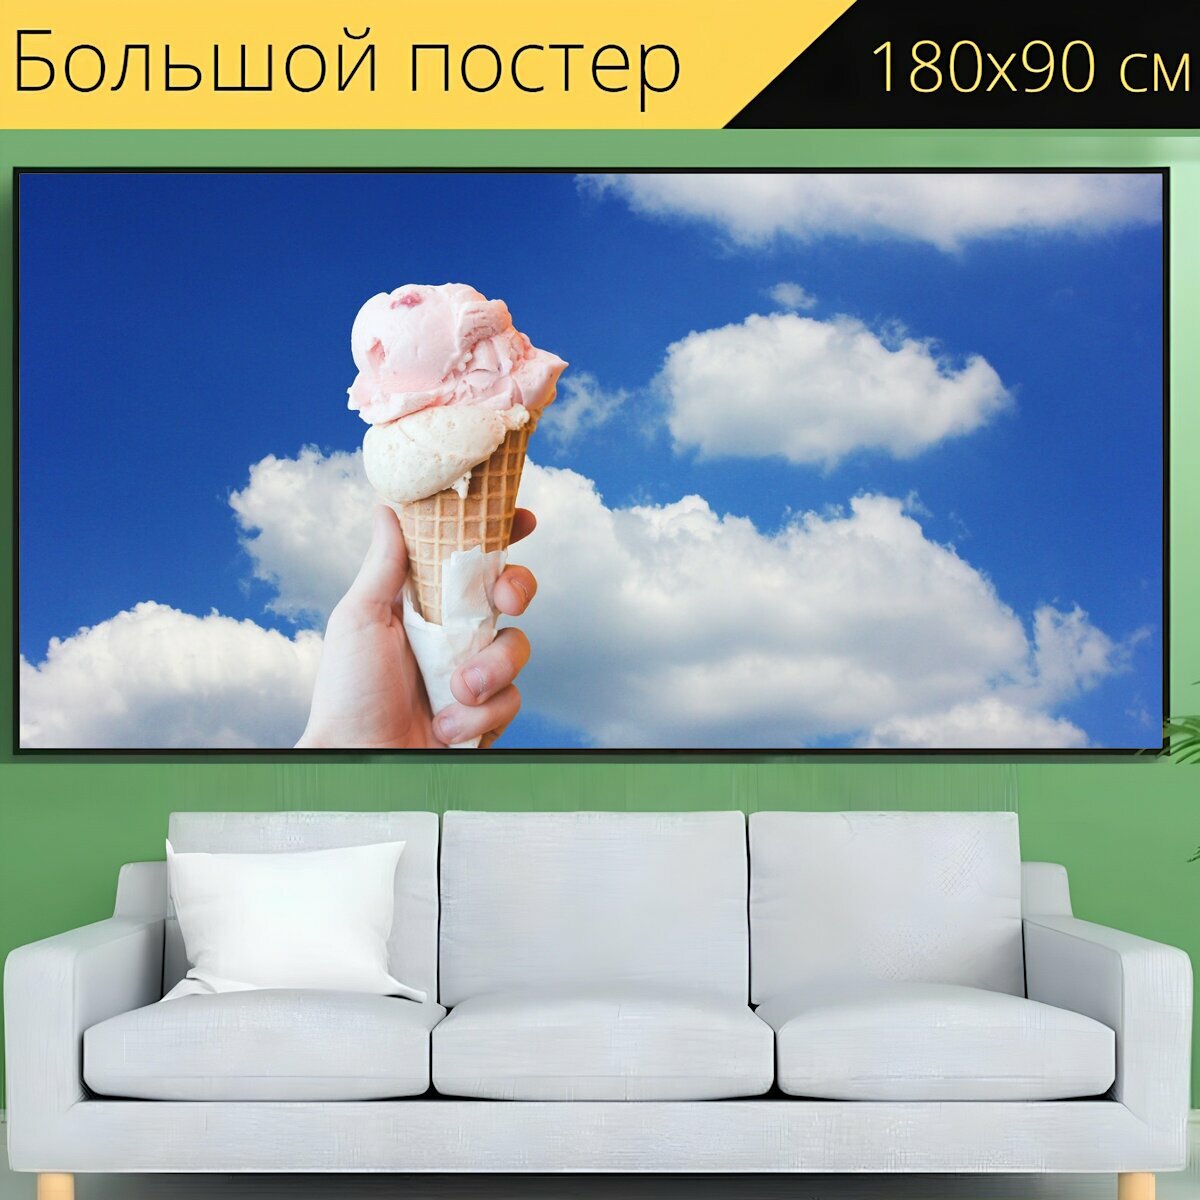 Большой постер "Мороженое, молочное мороженое, мягкое мороженое" 180 x 90 см. для интерьера